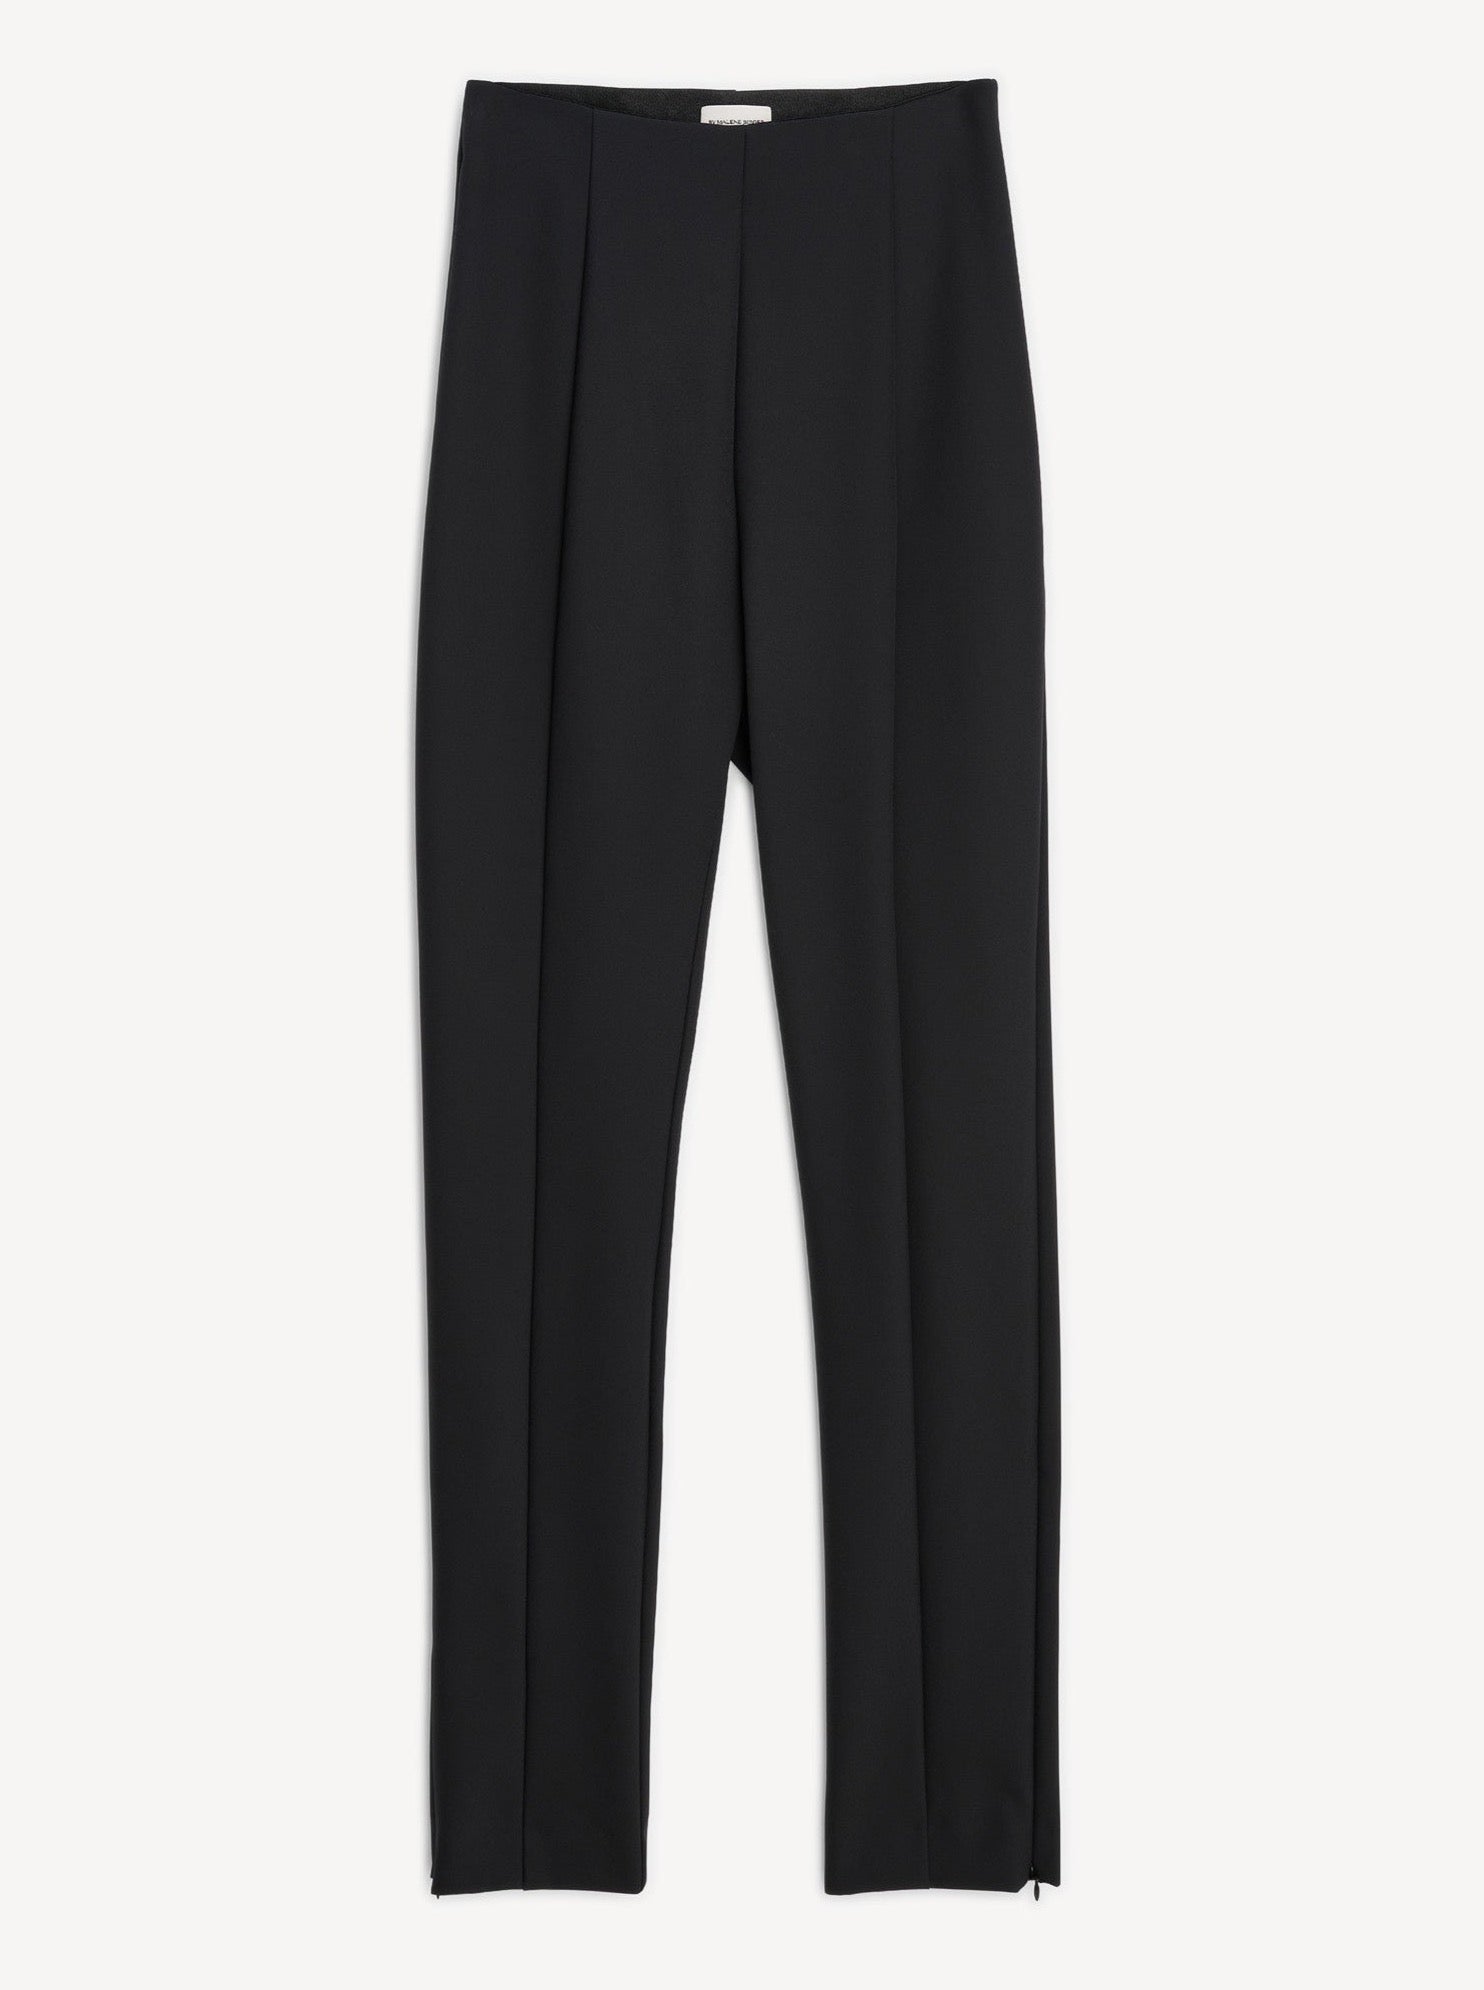 Lisaboa trousers, black